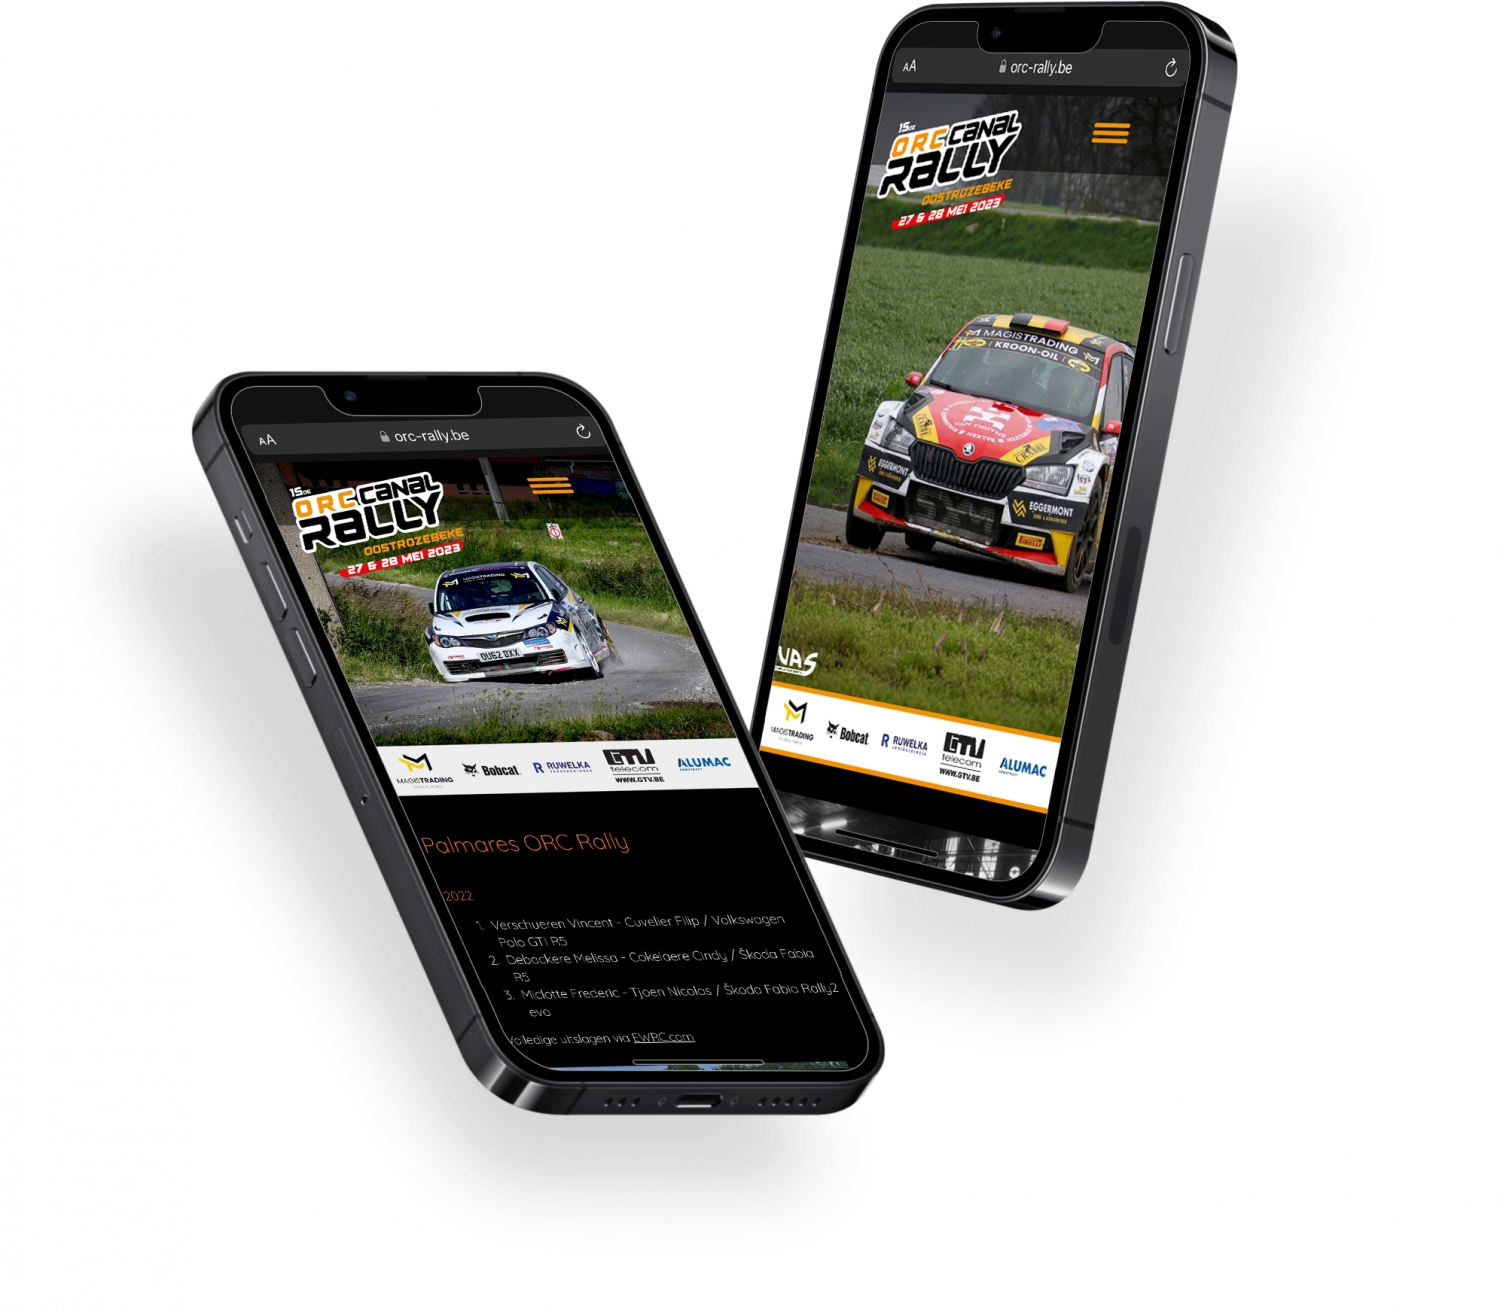 Website Rallysport Oostrozebeke